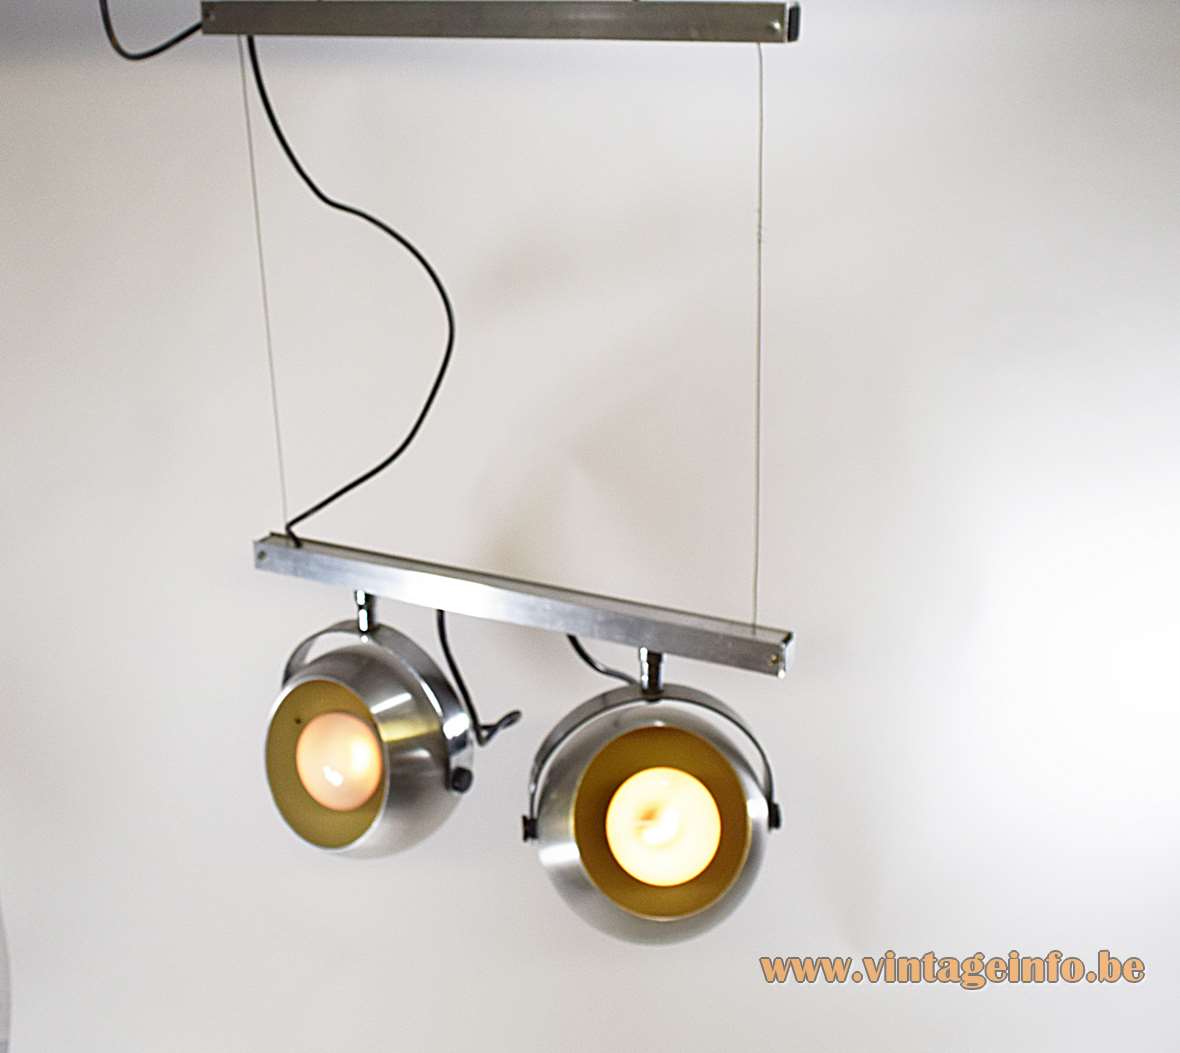 Double eyeball spotlight ceiling lamp brushed aluminium globe lampshades chrome handles metal beams 1960s 1970s